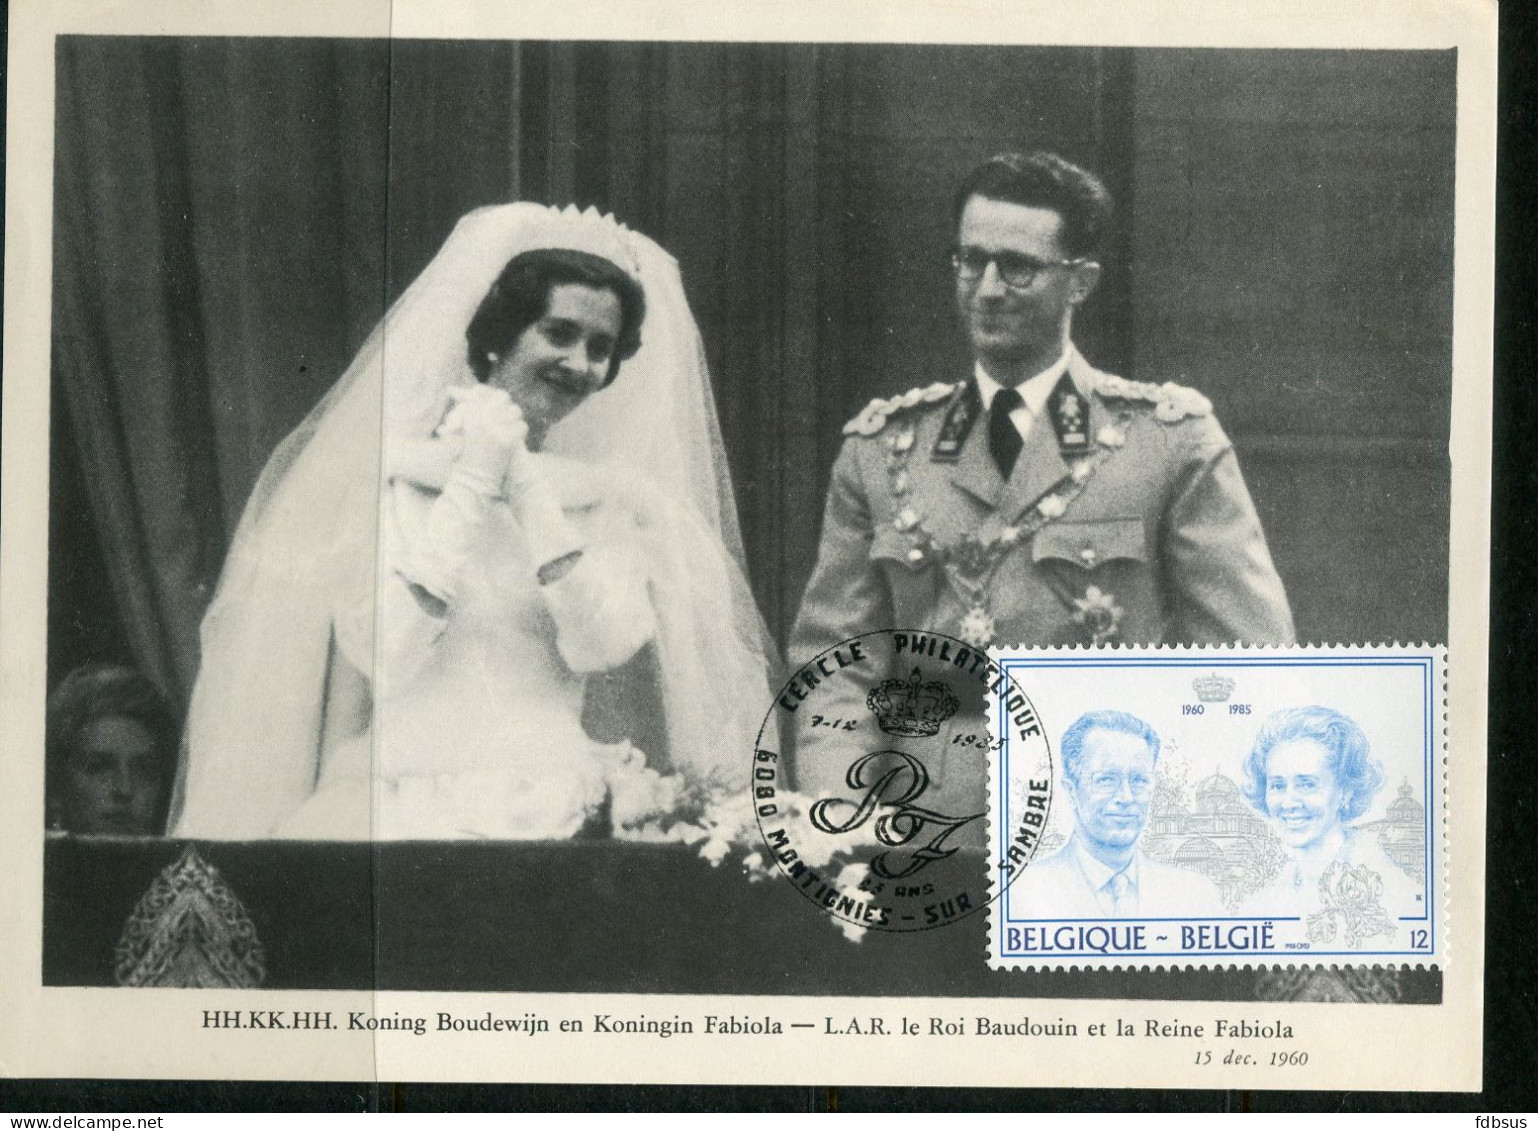 8 foto's Zilveren Huwelijks jubileum Koning BOUDEWIJN en Koningin FABIOLA - diverse stempels op zegel 12Fr nr 2198